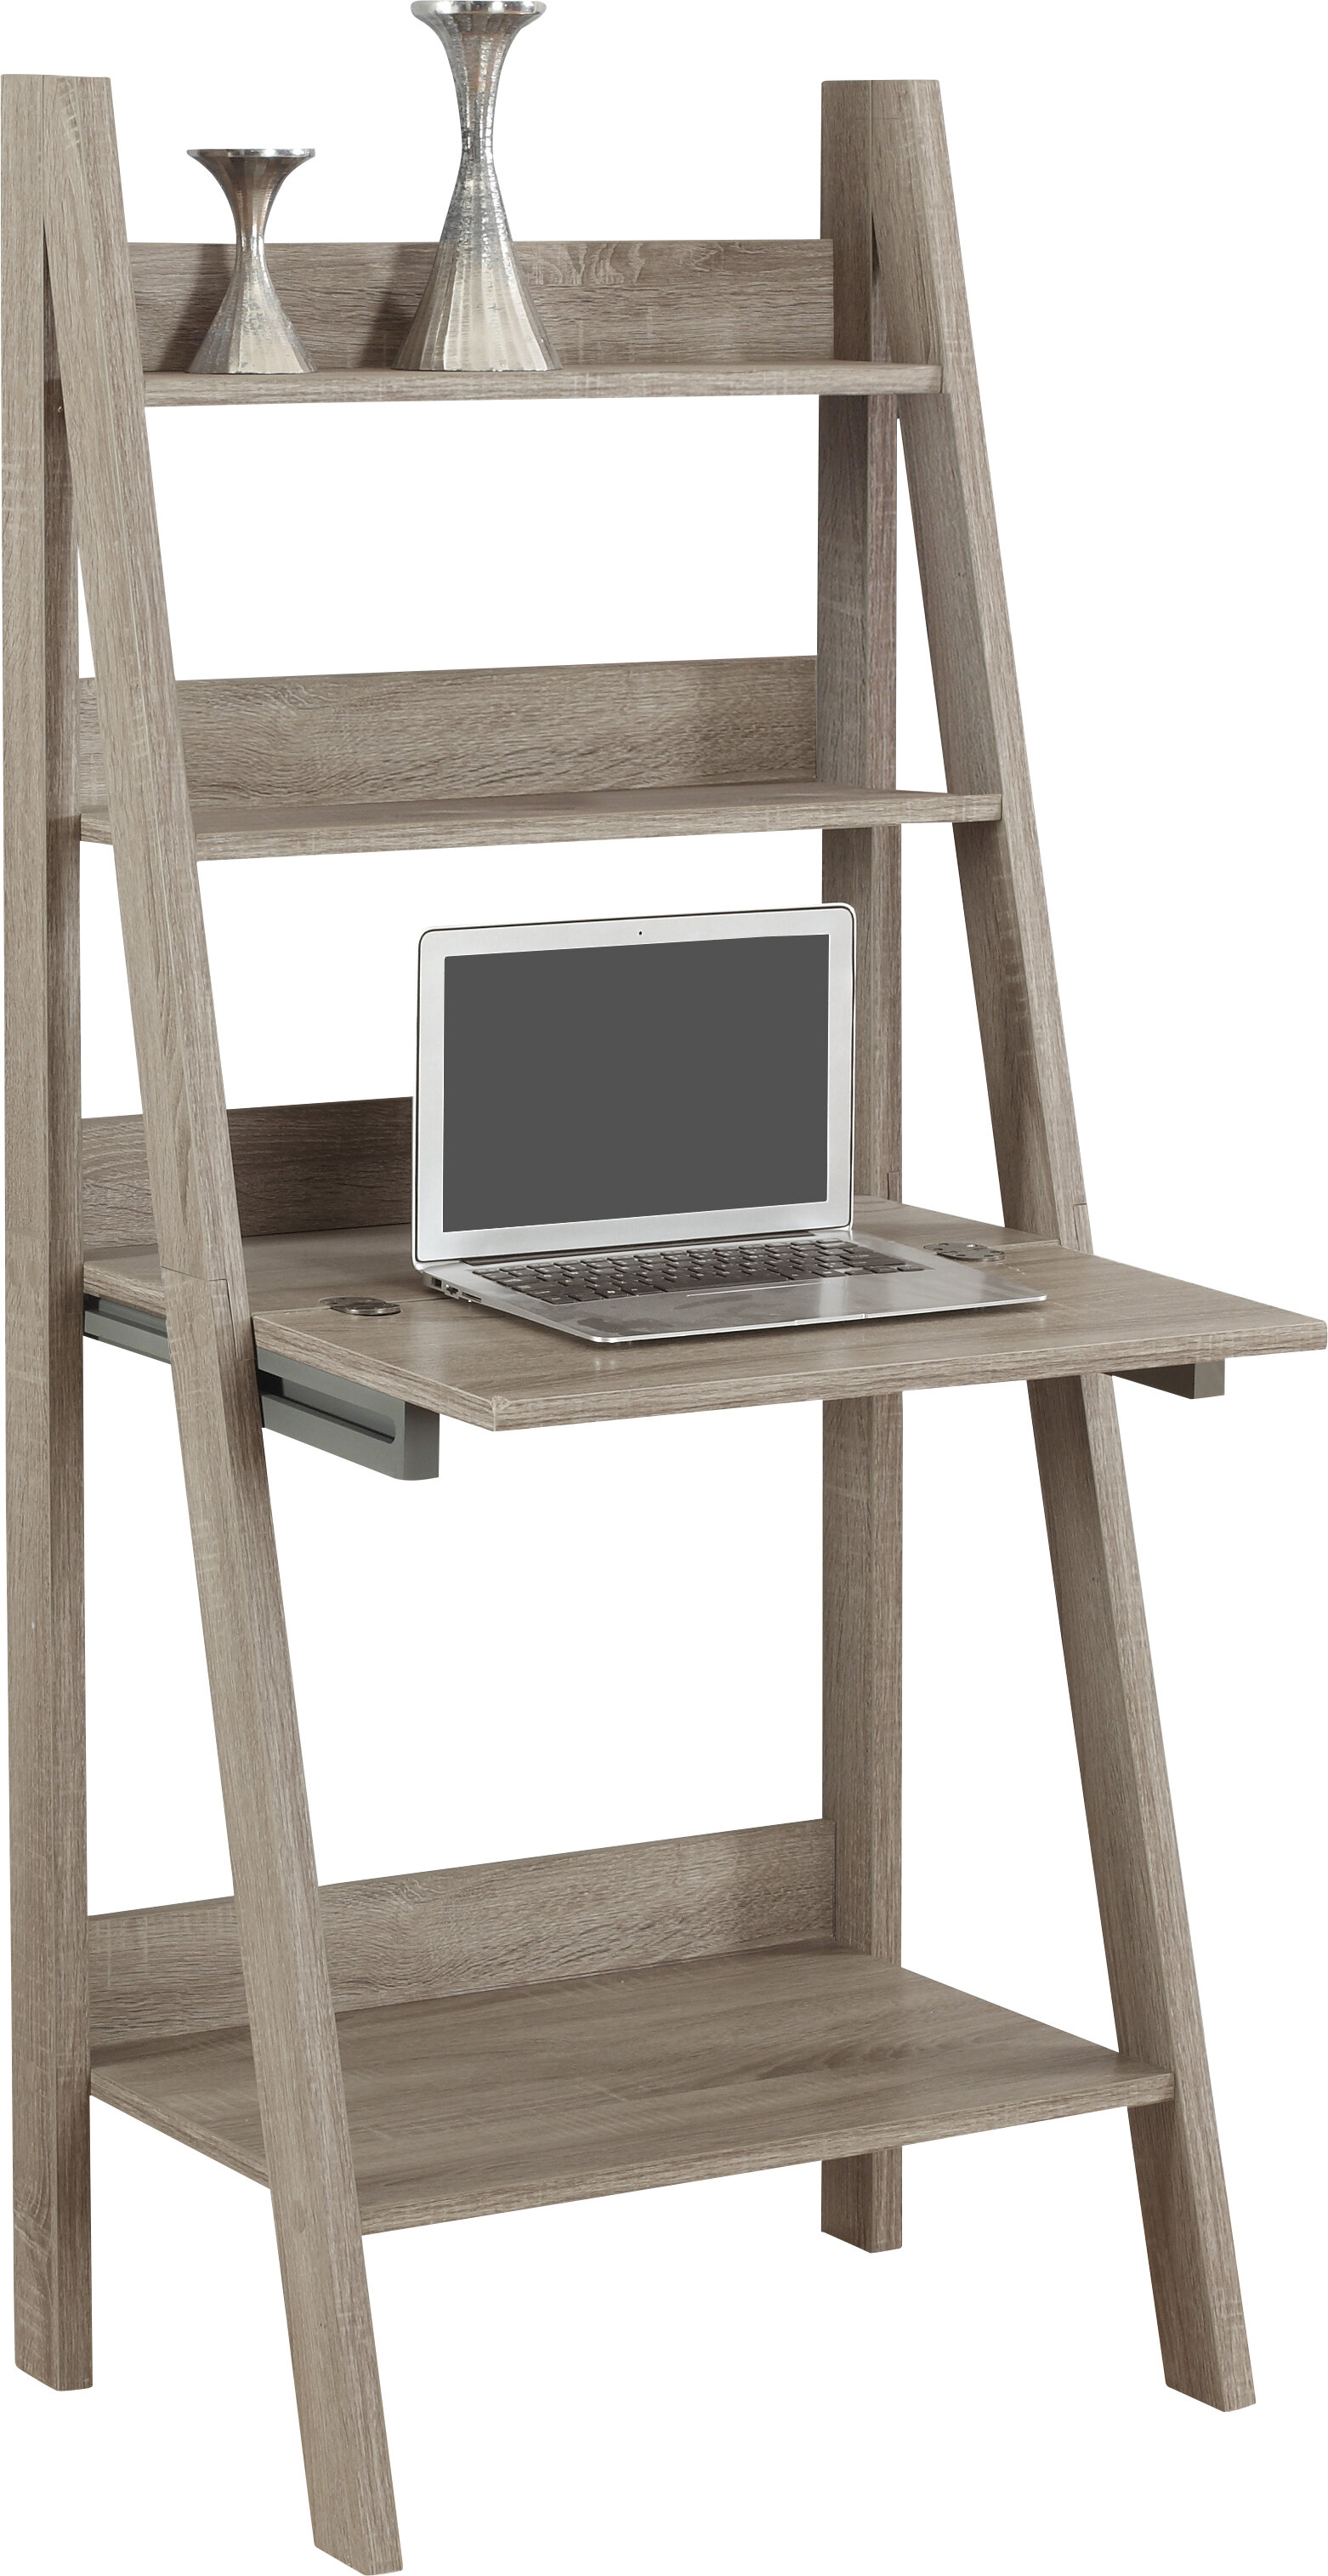 Feist Ladder Desk Reviews Joss Main